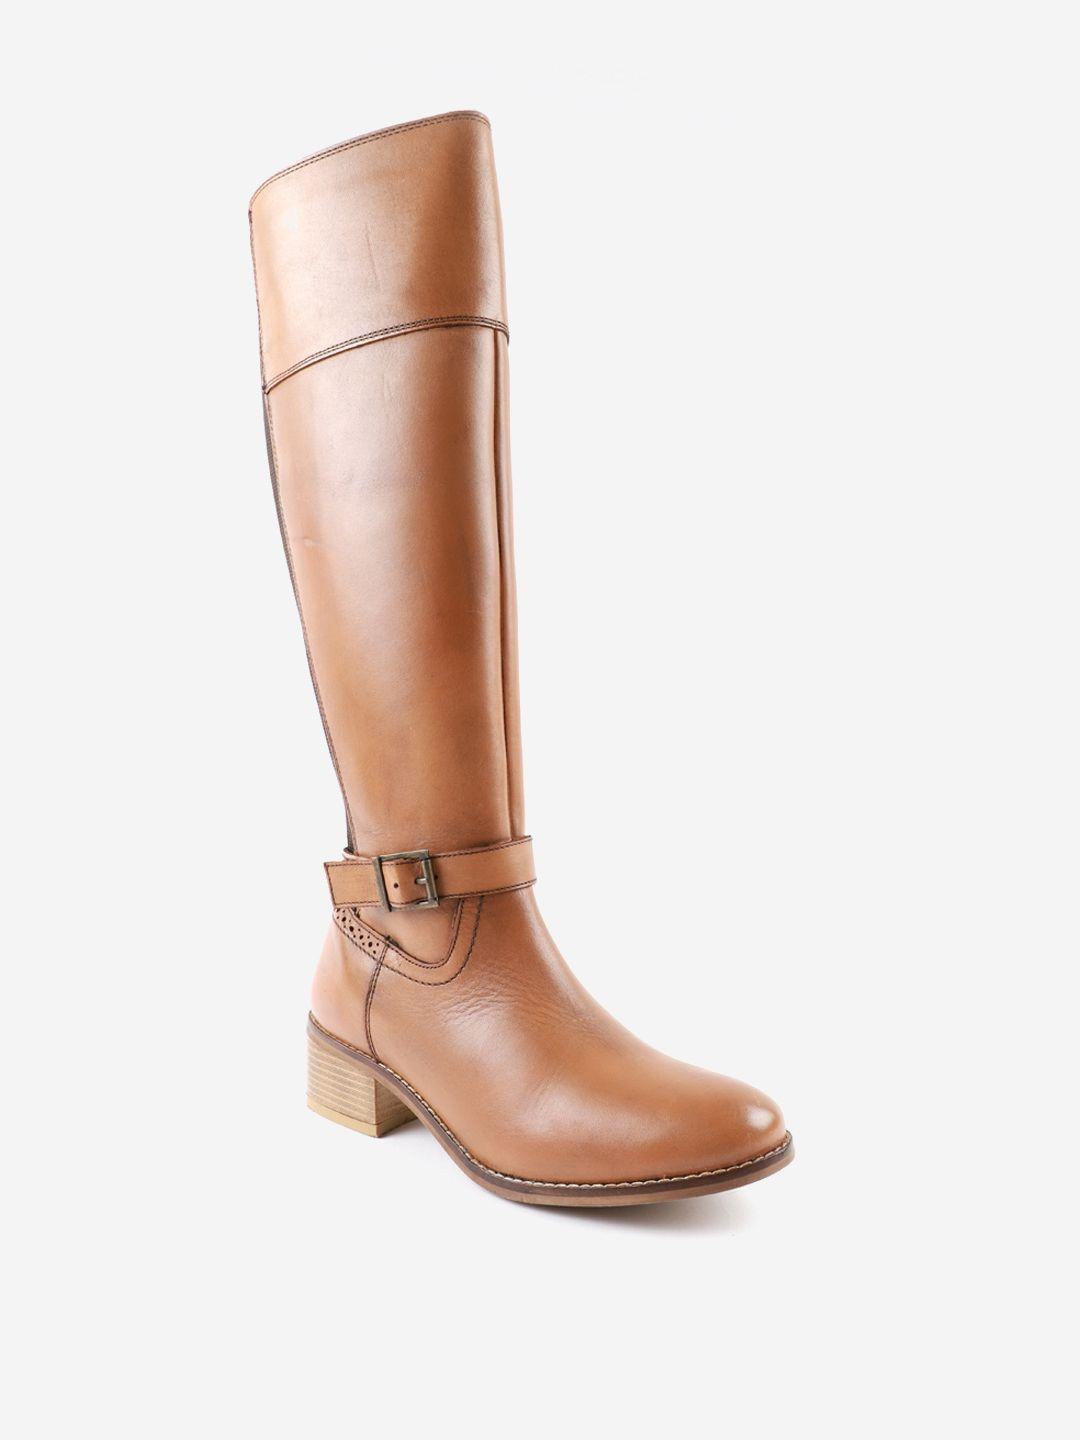 carlton london women tan flat boots